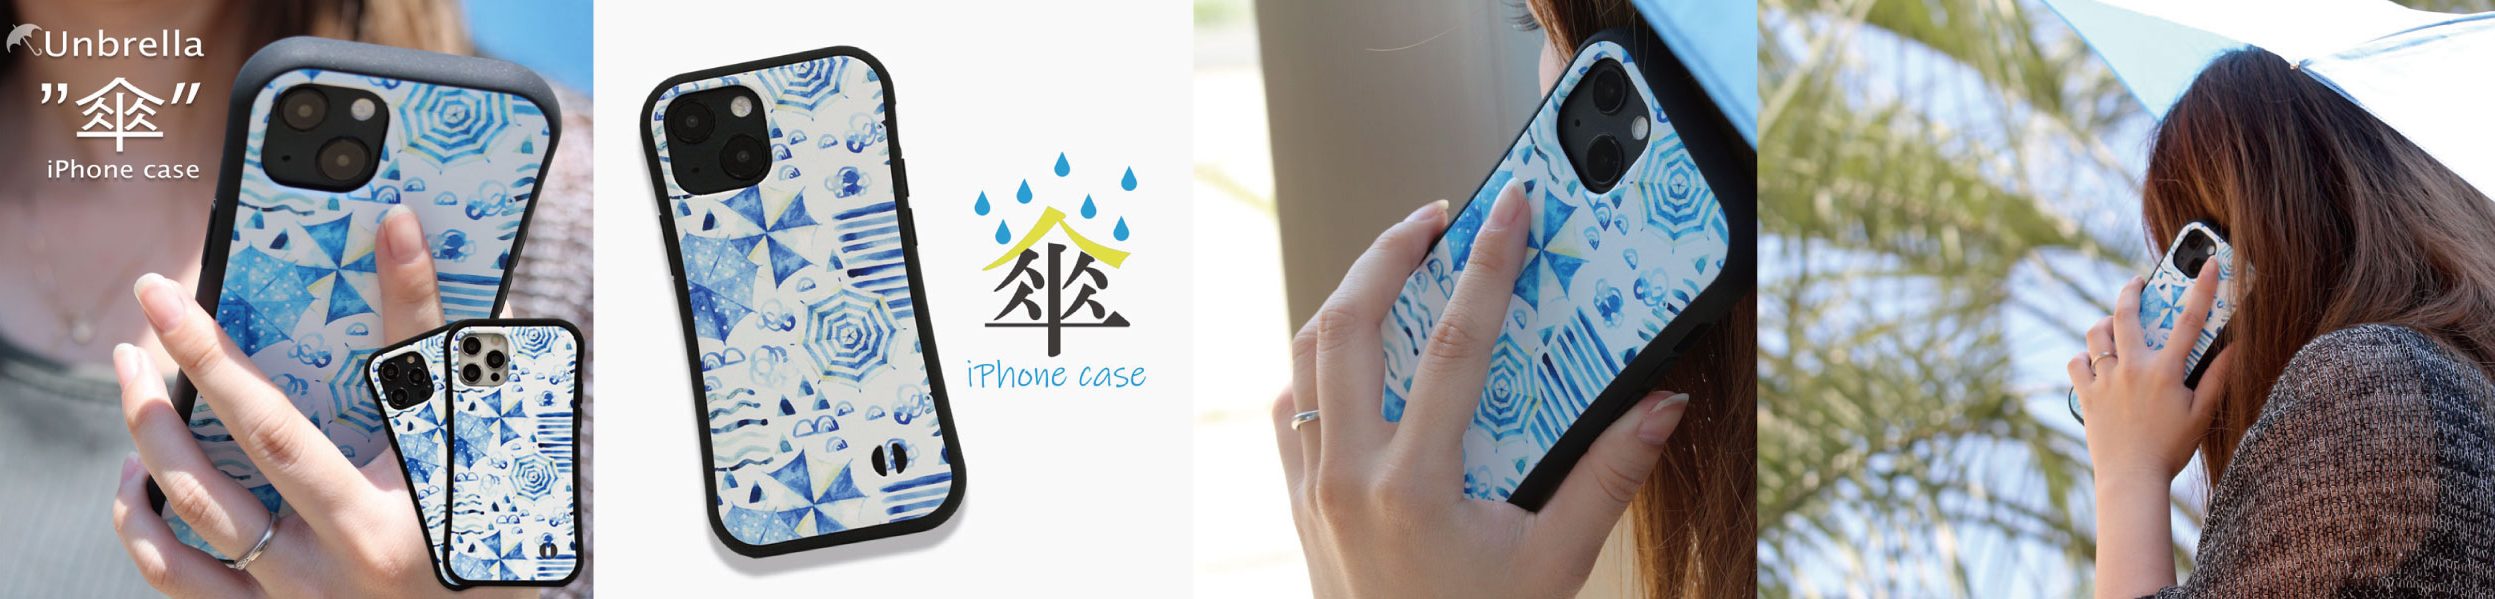 iPhoneケース【 雨と傘 】 爽やかなデザイン